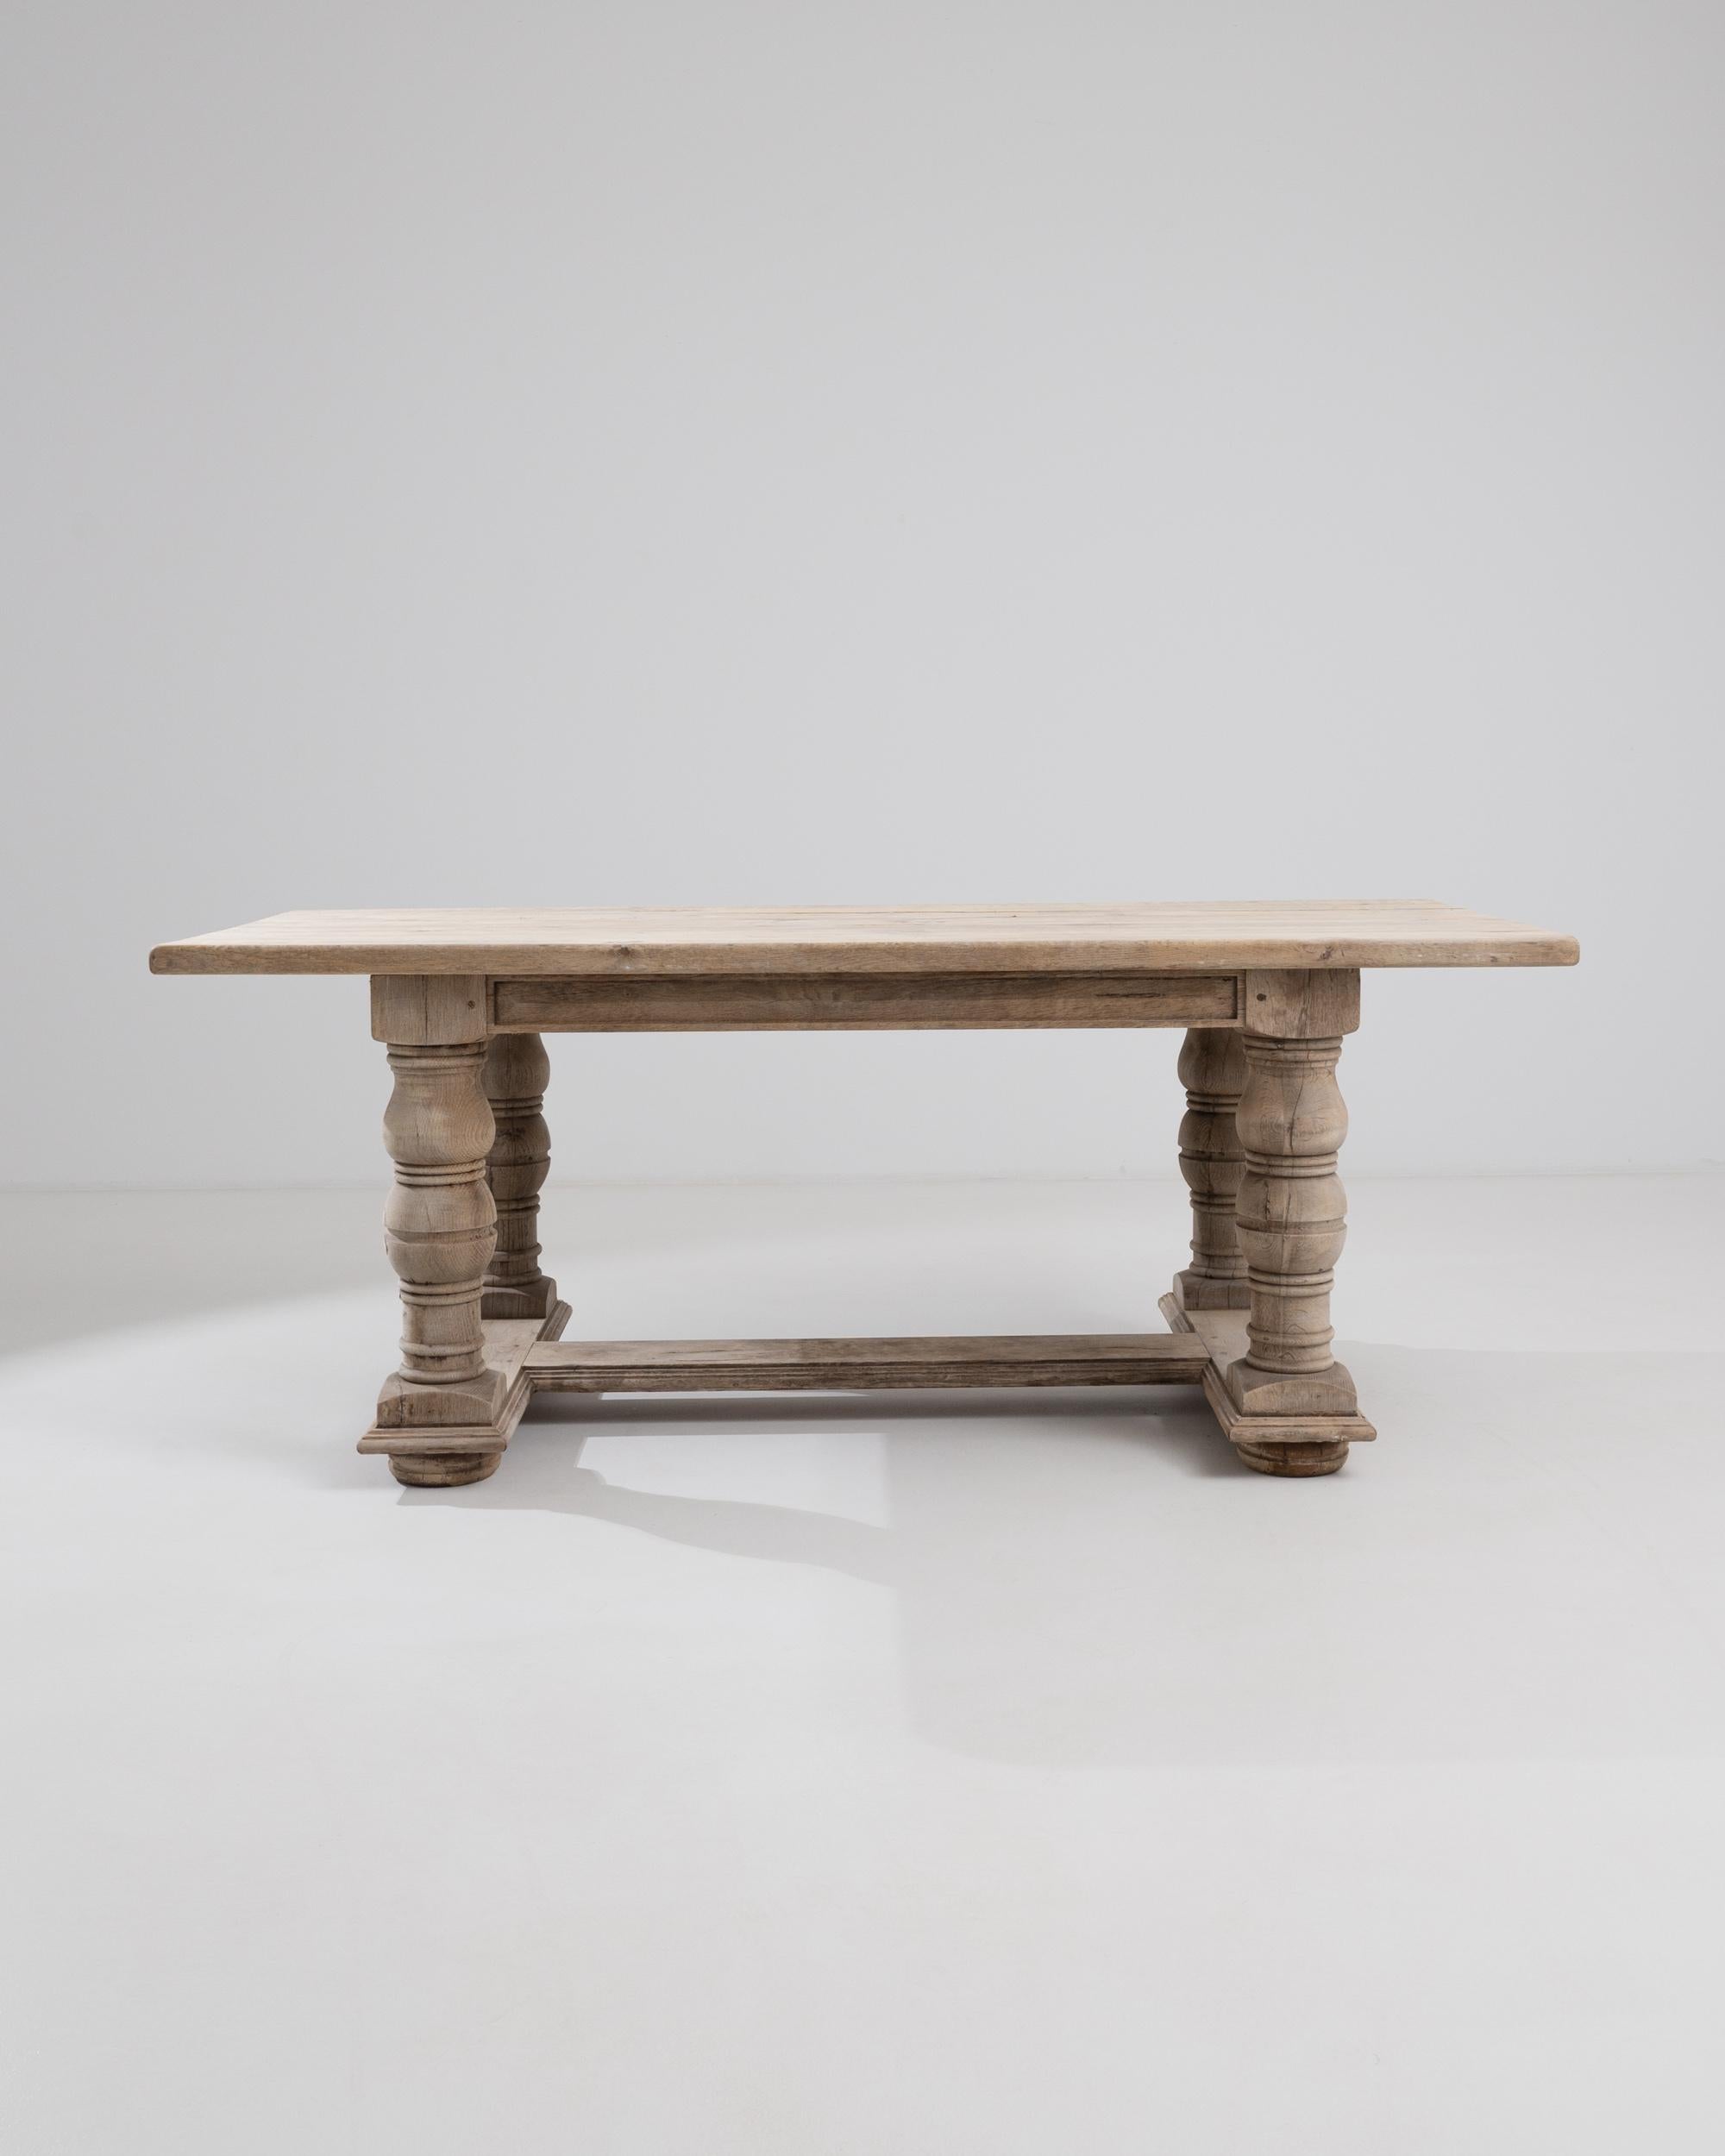 Ein Esstisch aus gebleichter belgischer Eiche aus dem 20. Jahrhundert. Dieser große Tisch zeichnet sich durch königliche Handwerkskunst aus: kolossale Beine sind mit Präzision geschnitzt, sorgfältige Profile vervollständigen die Kanten eines jeden